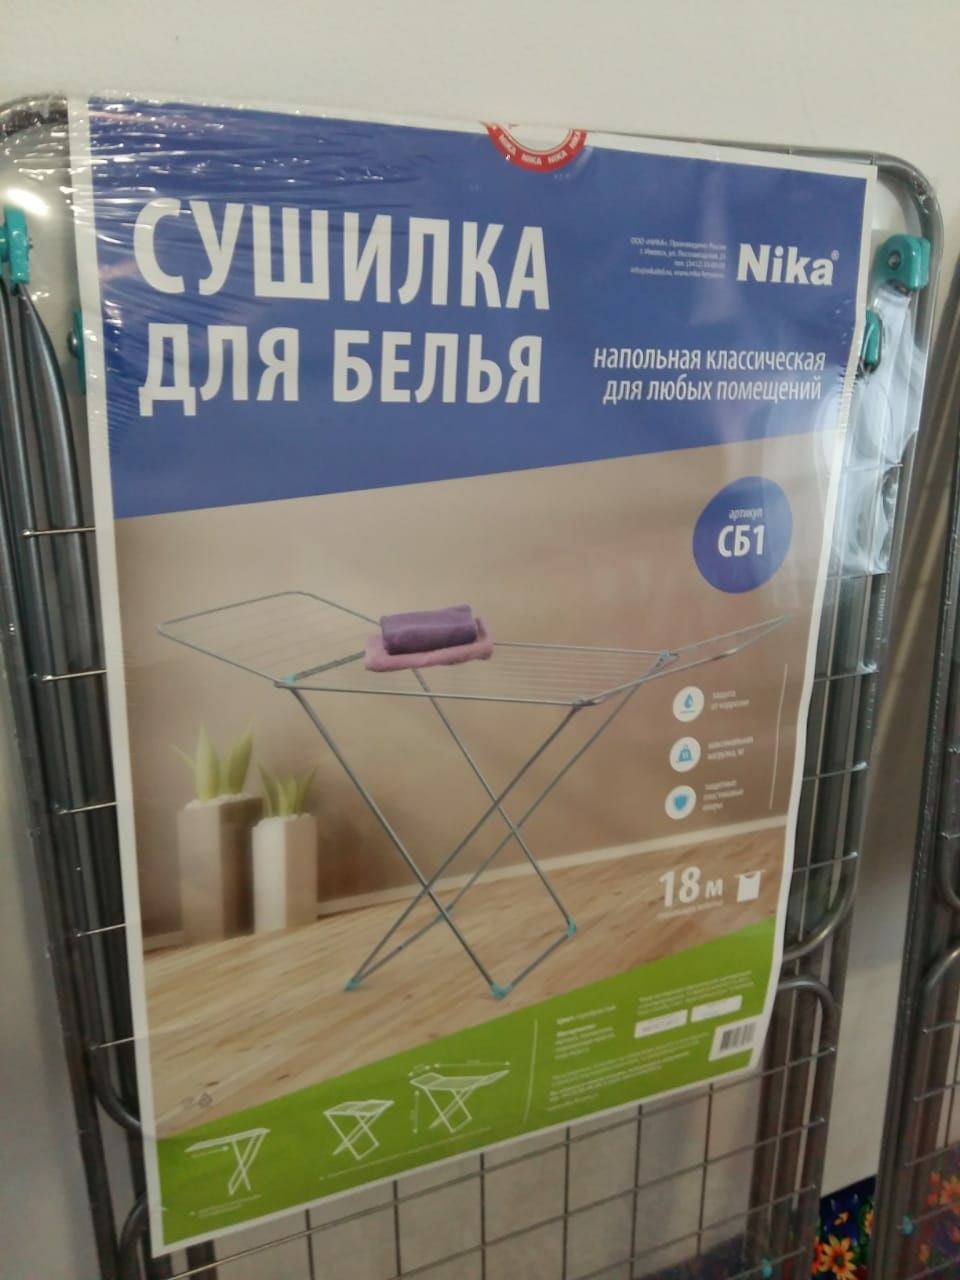 Сушилки для белья Nika 18М новые в упаковке